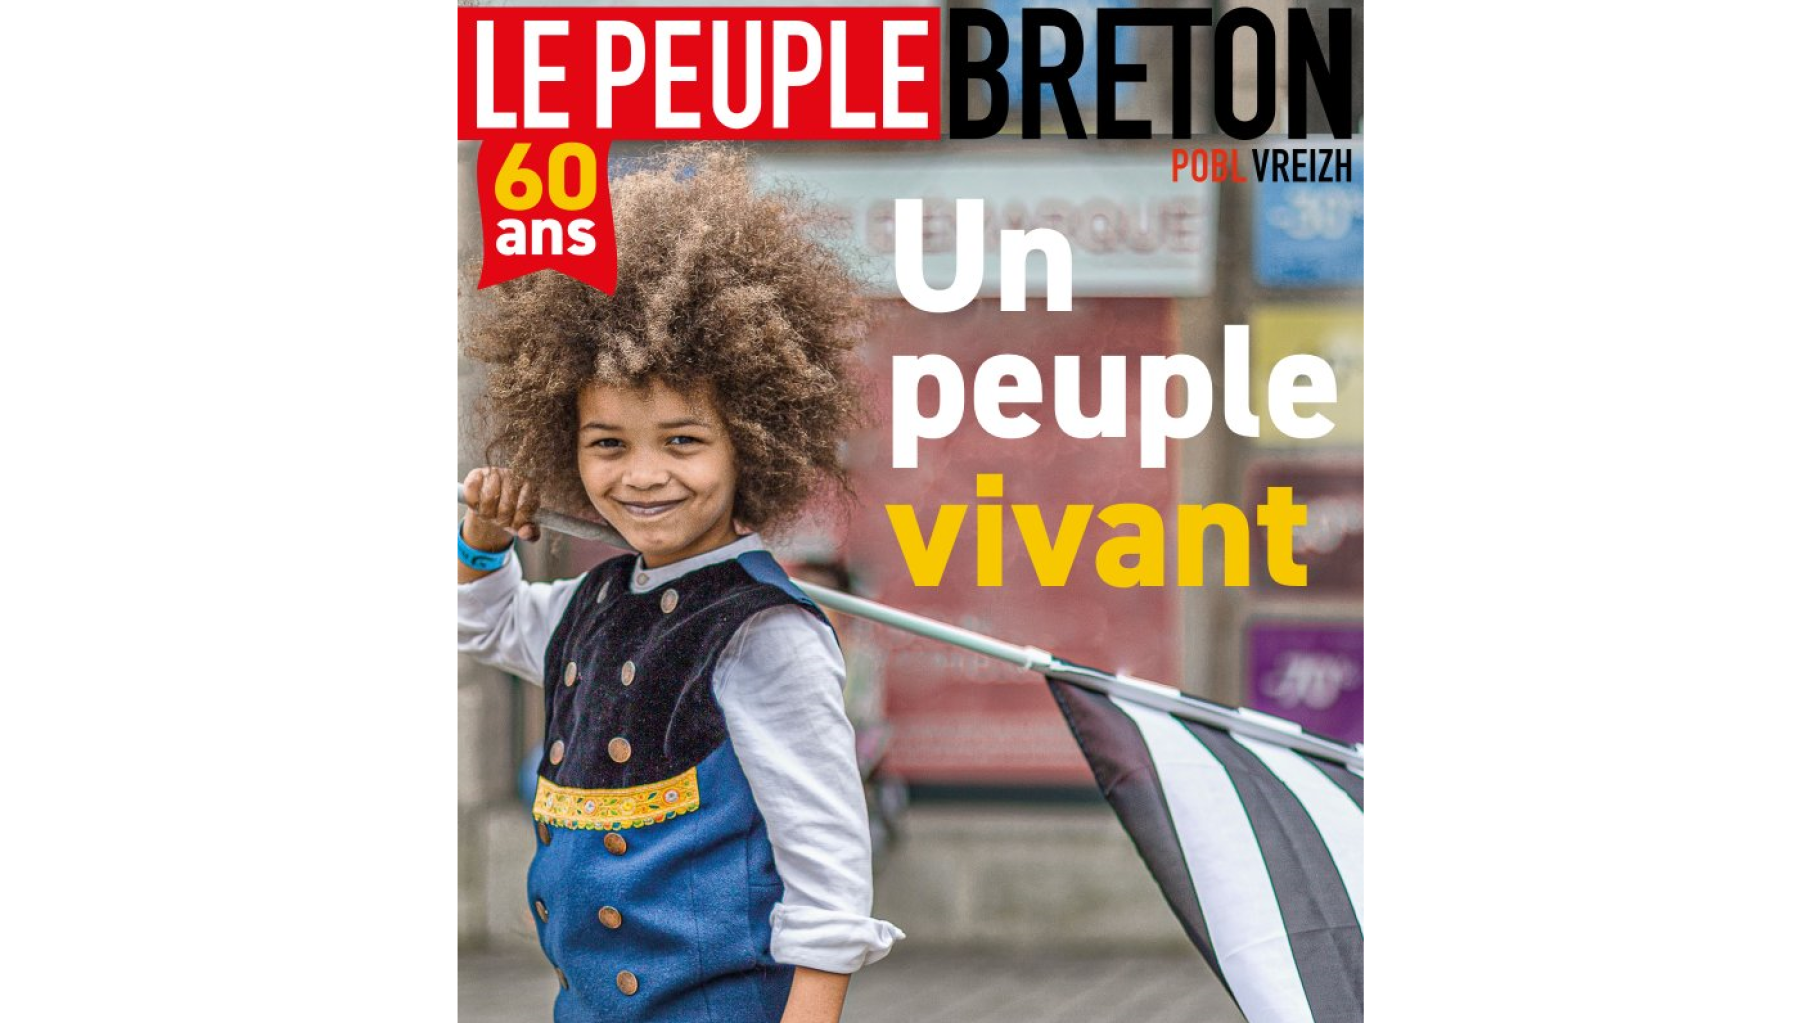 Le magazine « Le Peuple breton » a reçu des centaines de messages racistes  après sa Une avec un enfant métis